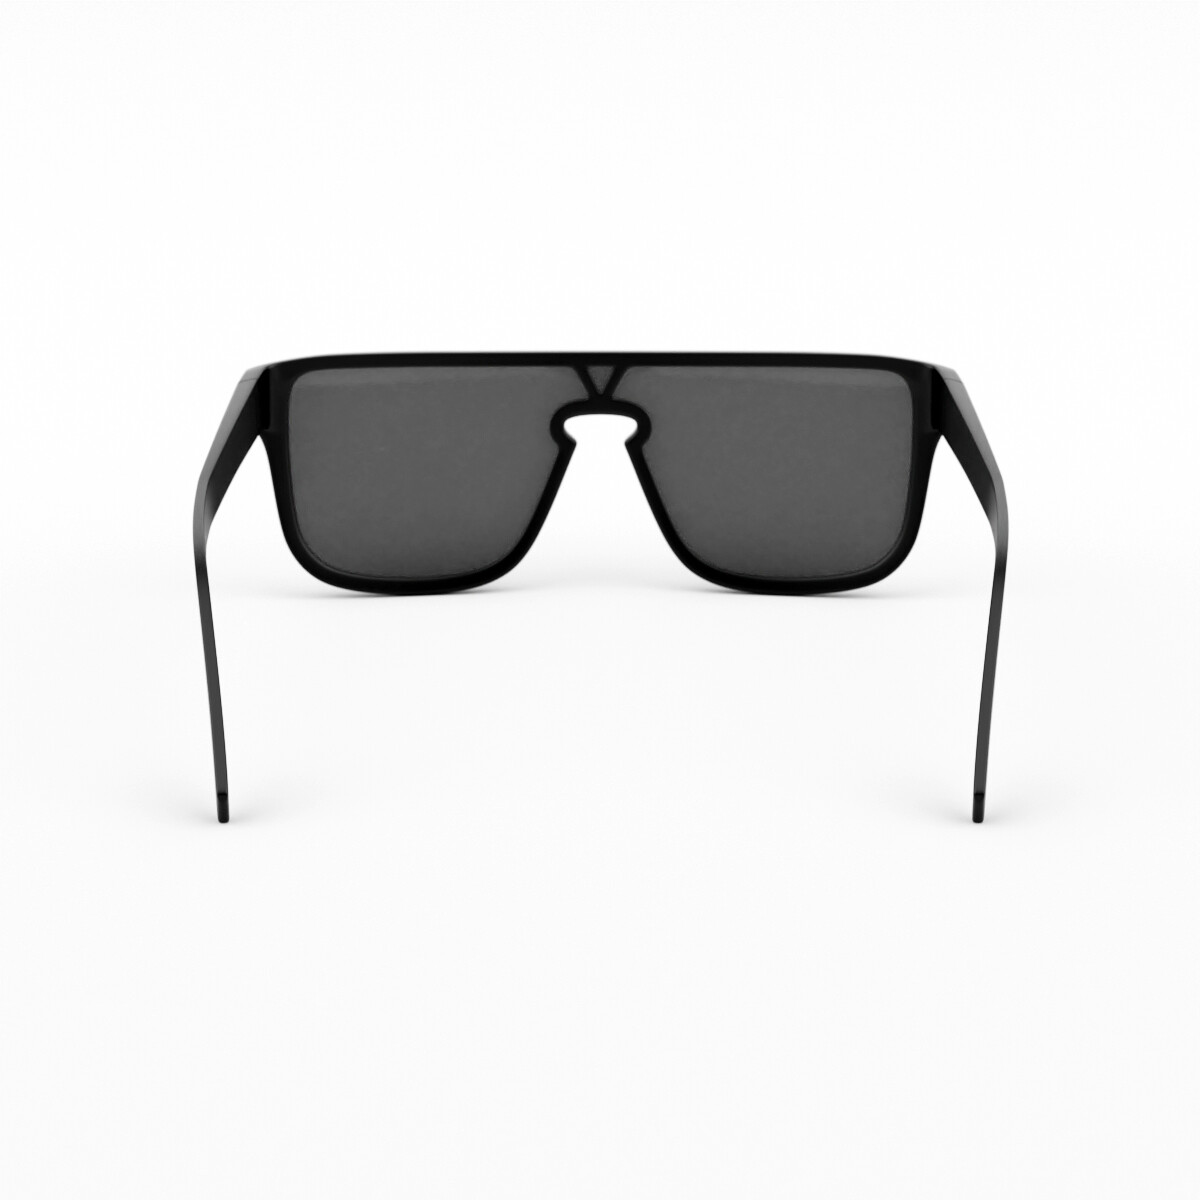 Optic vision - Louis Vuitton waimea #sunglasses #fashion